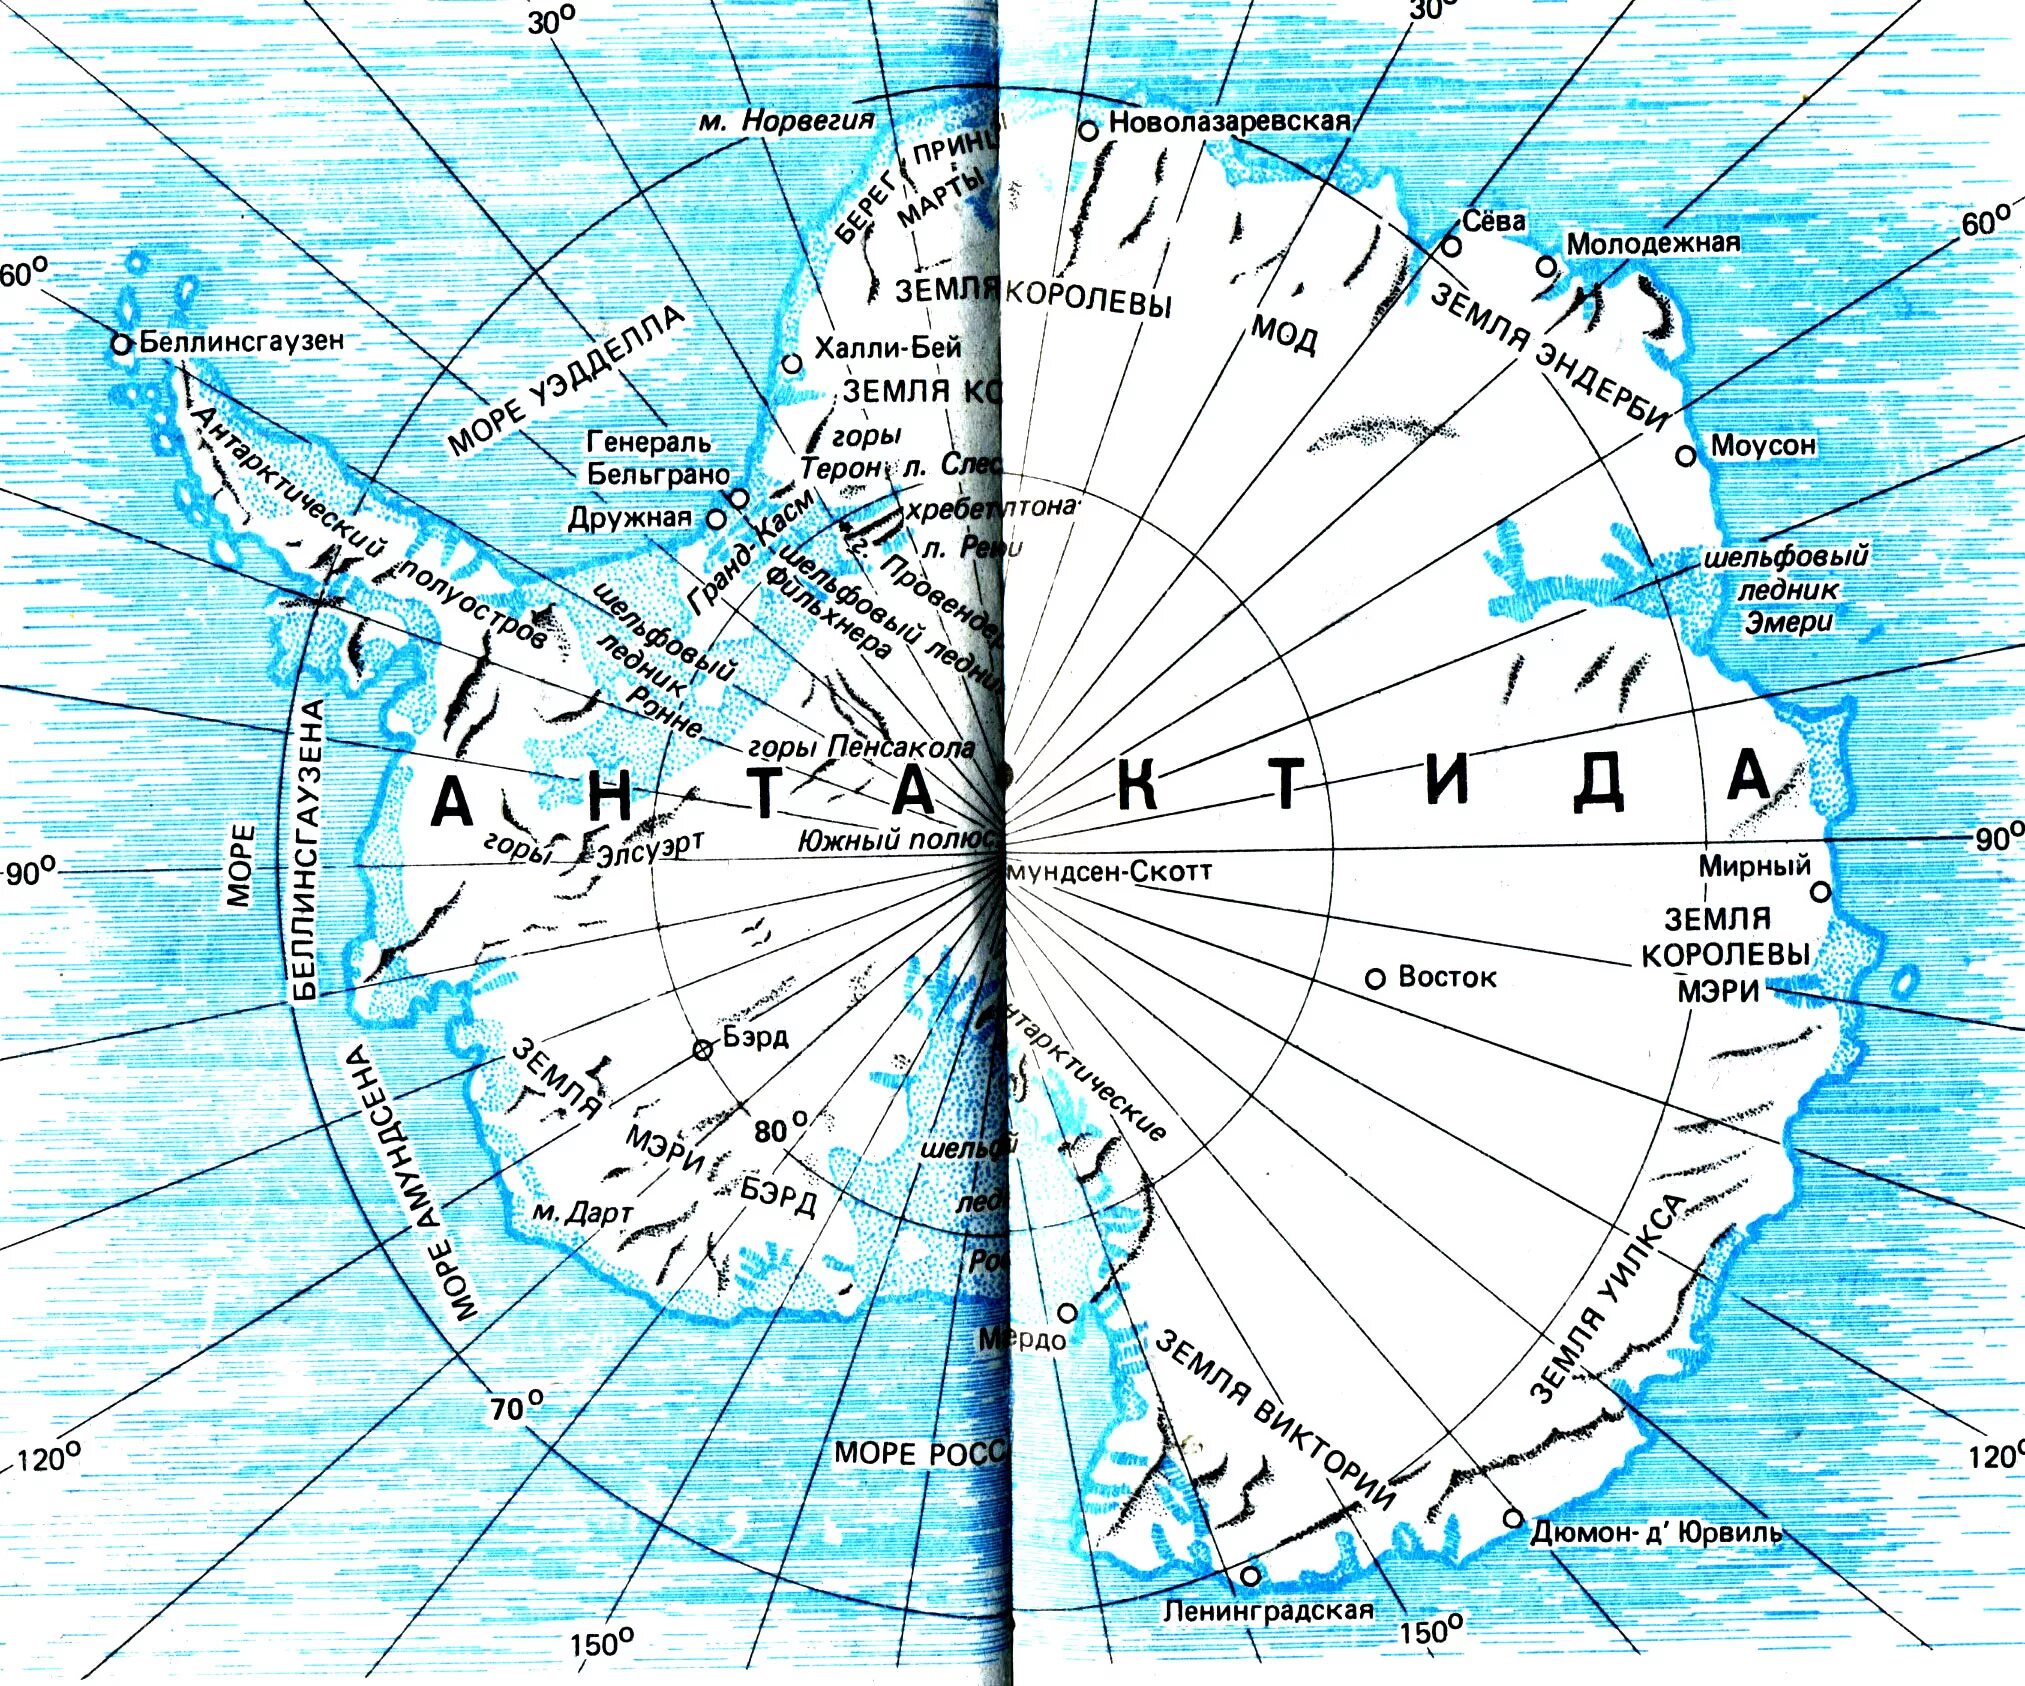 Антарктические широты. Южный полюс на карте Антарктиды. Карта Северного полюса географическая. Географическая карта Южного полюса. Полюс земли на карте Антарктиды.